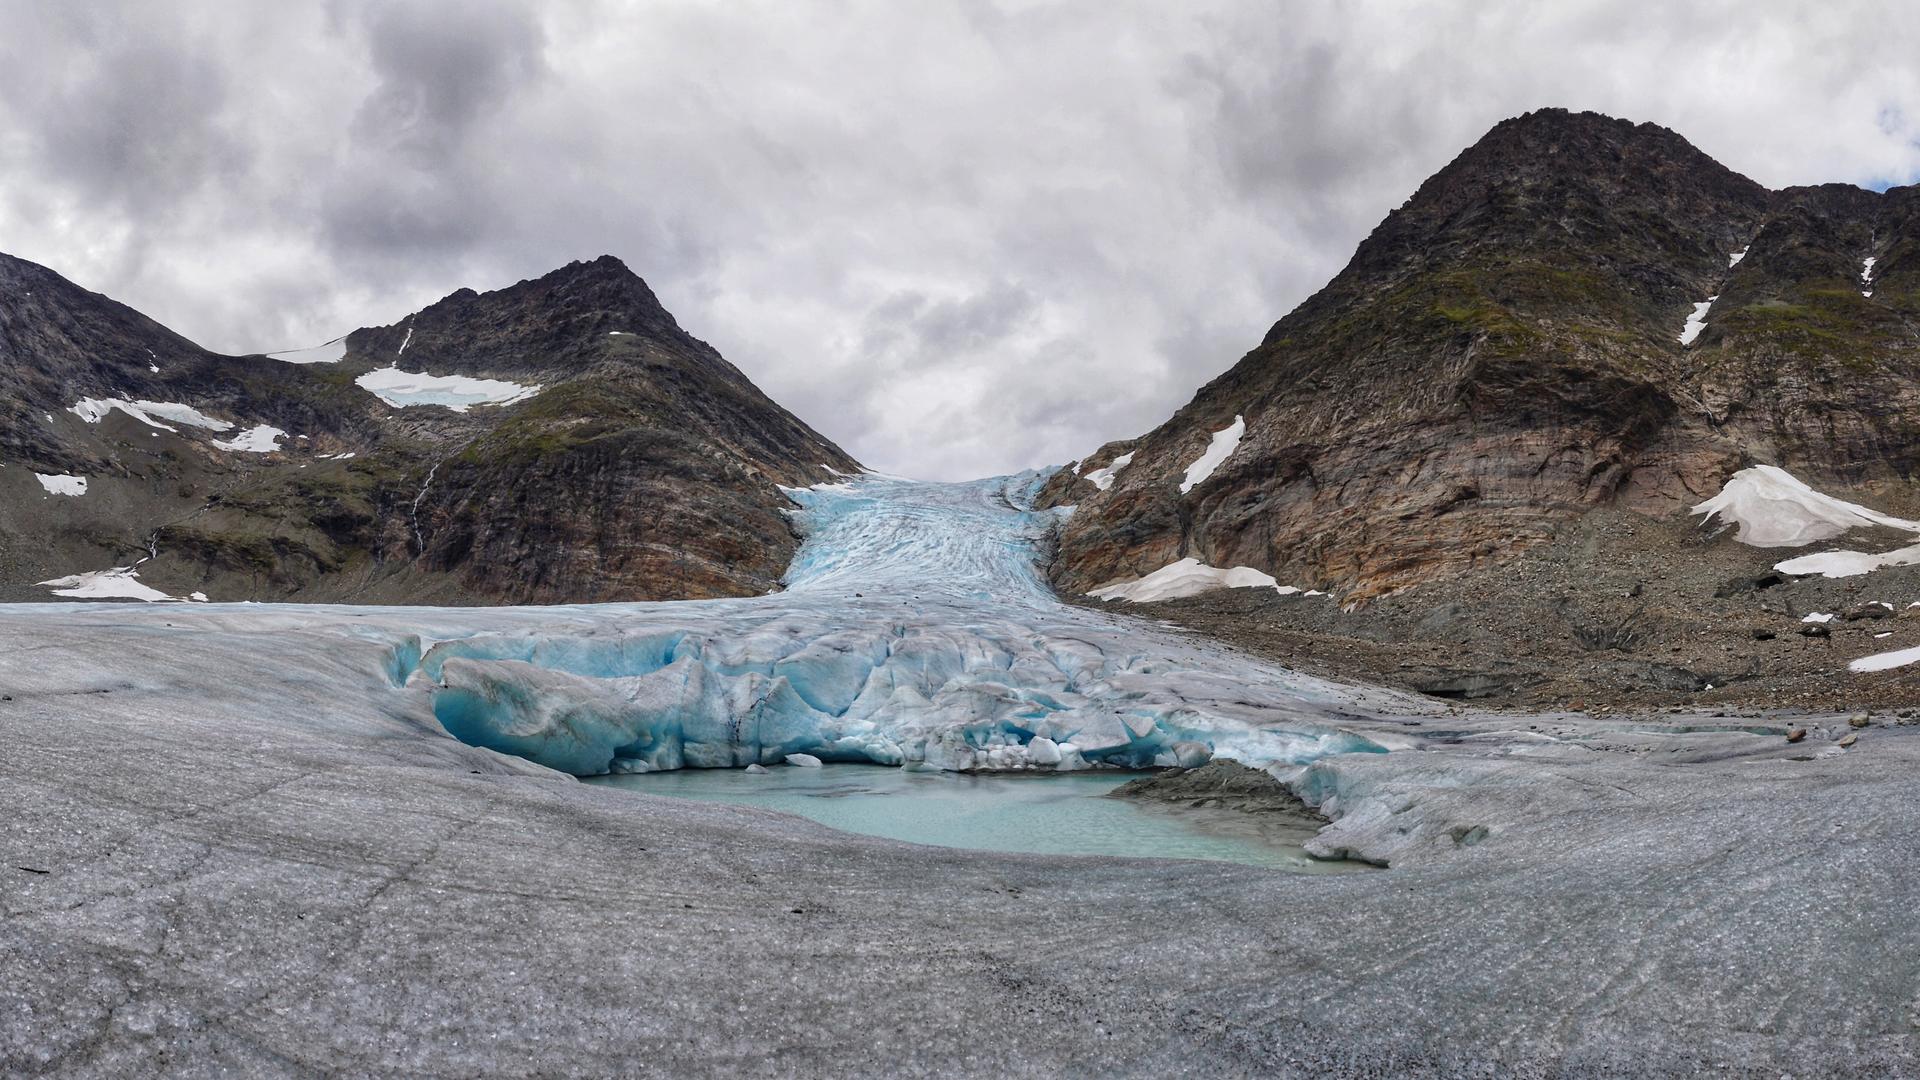 Blick auf einen Gletscher der stark geschrumpft ist sodass das darunter liegende Gebirge teilweise zu sehen ist